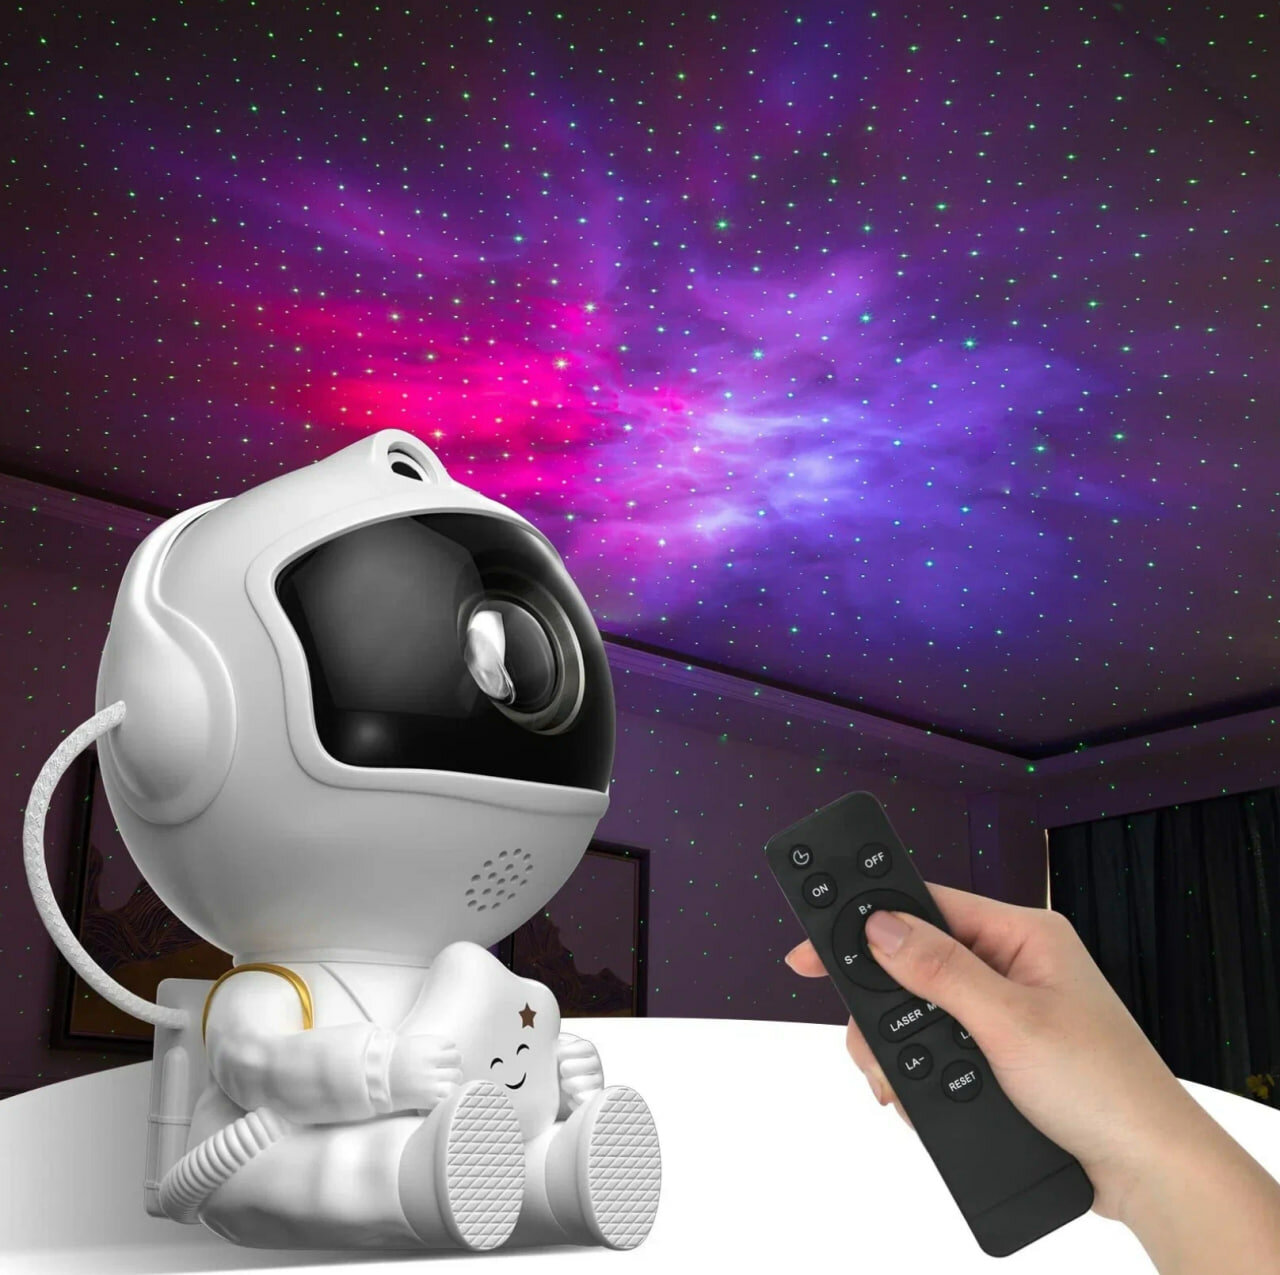 Проектор звездного неба, лазерный проектор ночник, домашний планетарий (астропланетарий) от GadFamily.